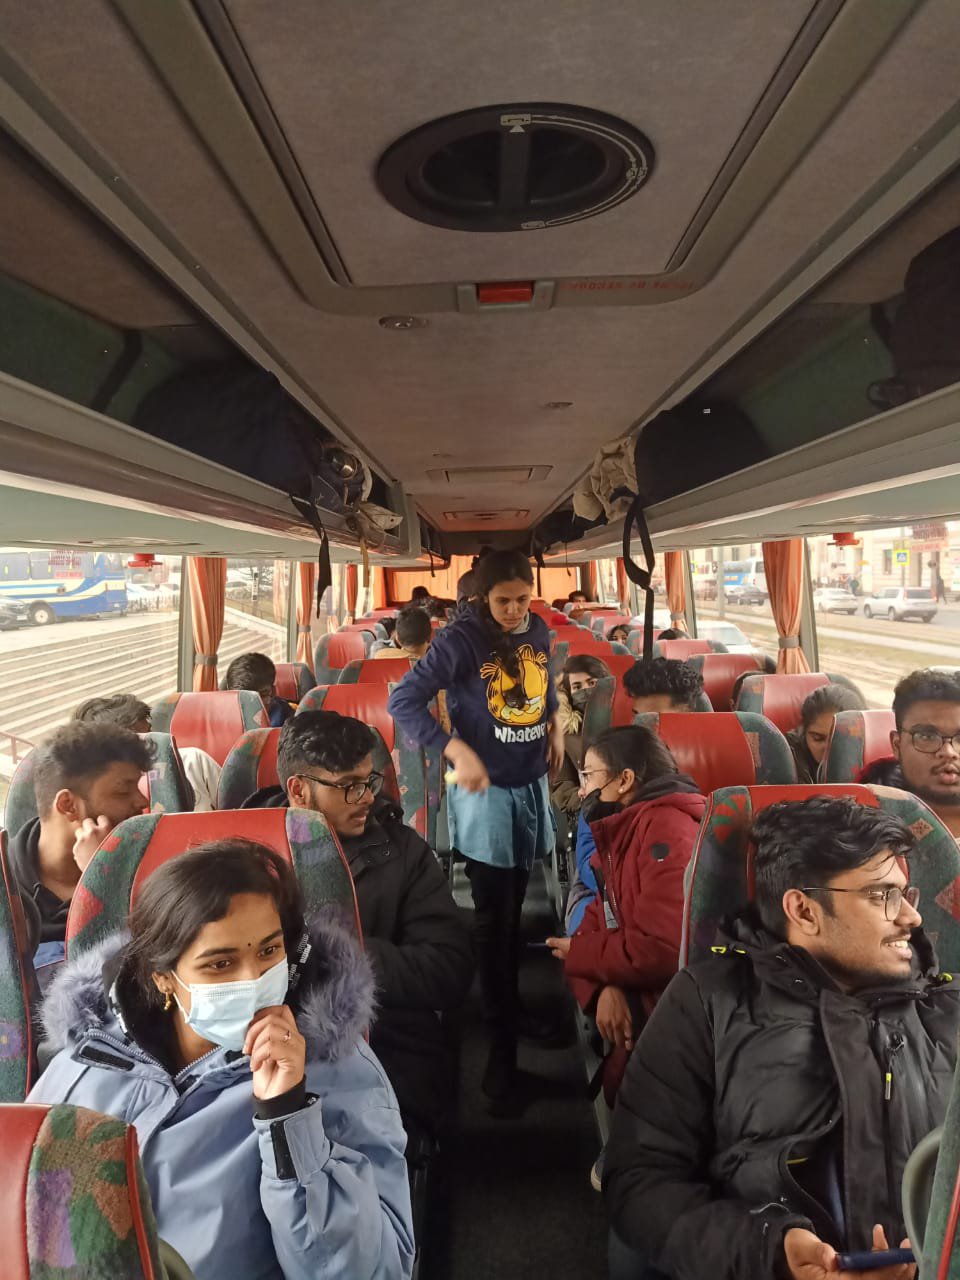 Група індійських студентів у організованому українськими волонтерами автобусі у Львові, надано Ольгою Кухар